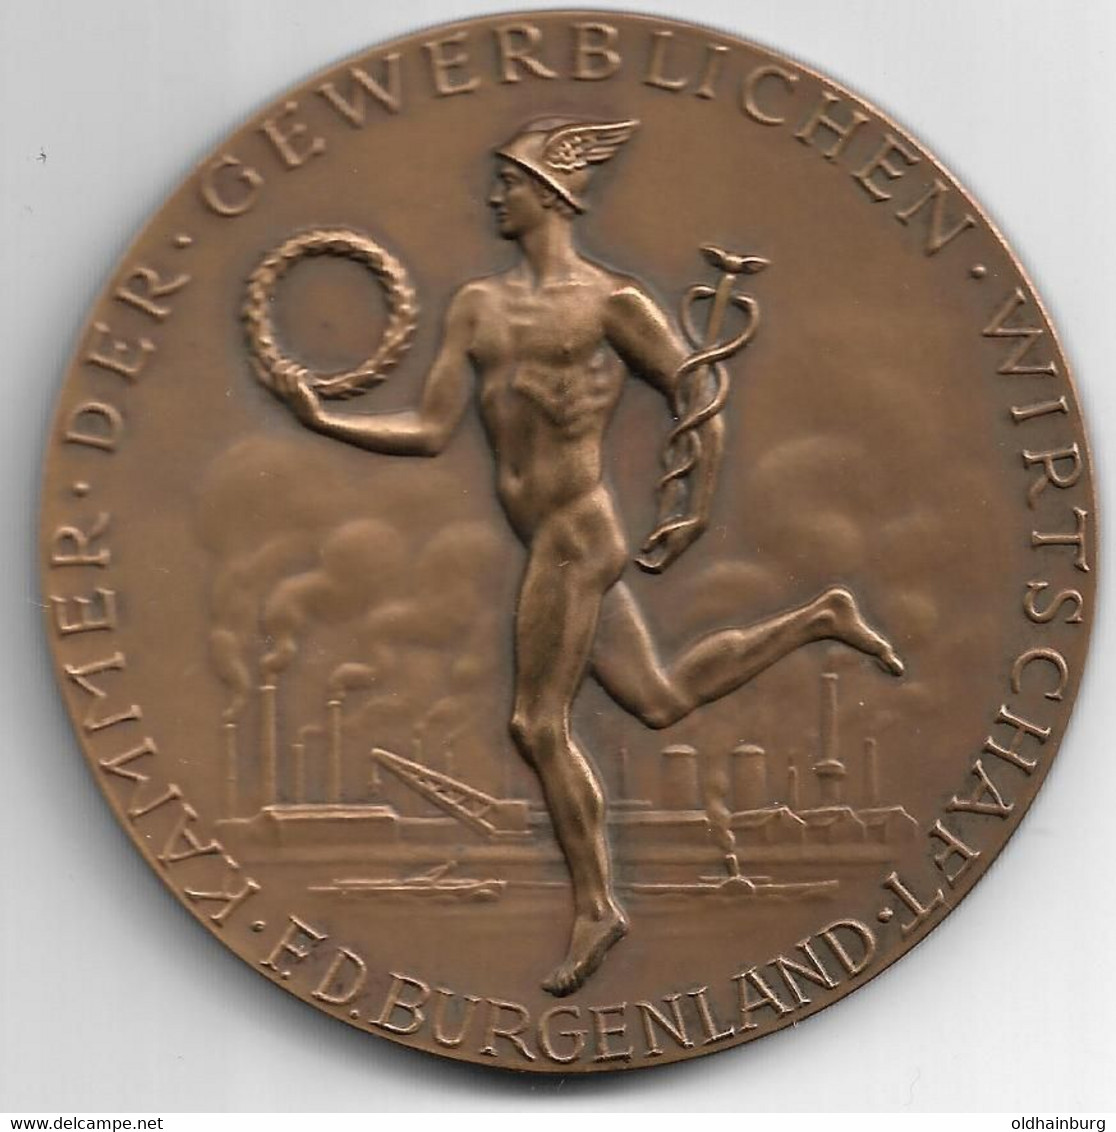 1390y: Medaille Der Kammer Der Gewerblichen Wirtschaft Burgenland 1970 In Bronze, "Für Besondere Verdienste" - Professionali / Di Società